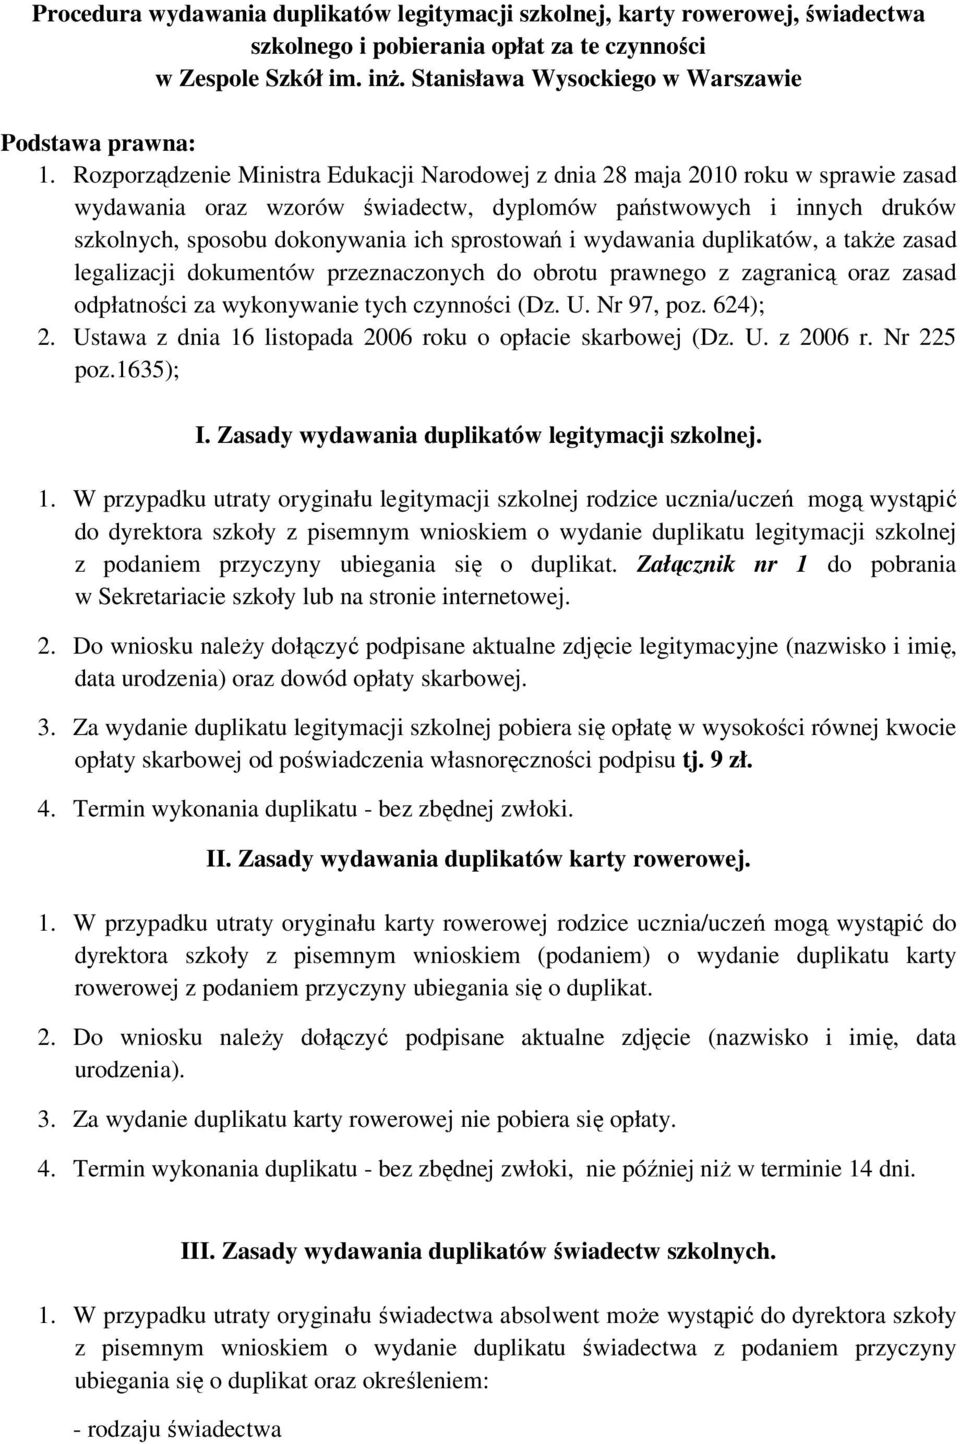 Rozporządzenie Ministra Edukacji Narodowej z dnia 28 maja 2010 roku w sprawie zasad wydawania oraz wzorów świadectw, dyplomów państwowych i innych druków szkolnych, sposobu dokonywania ich sprostowań